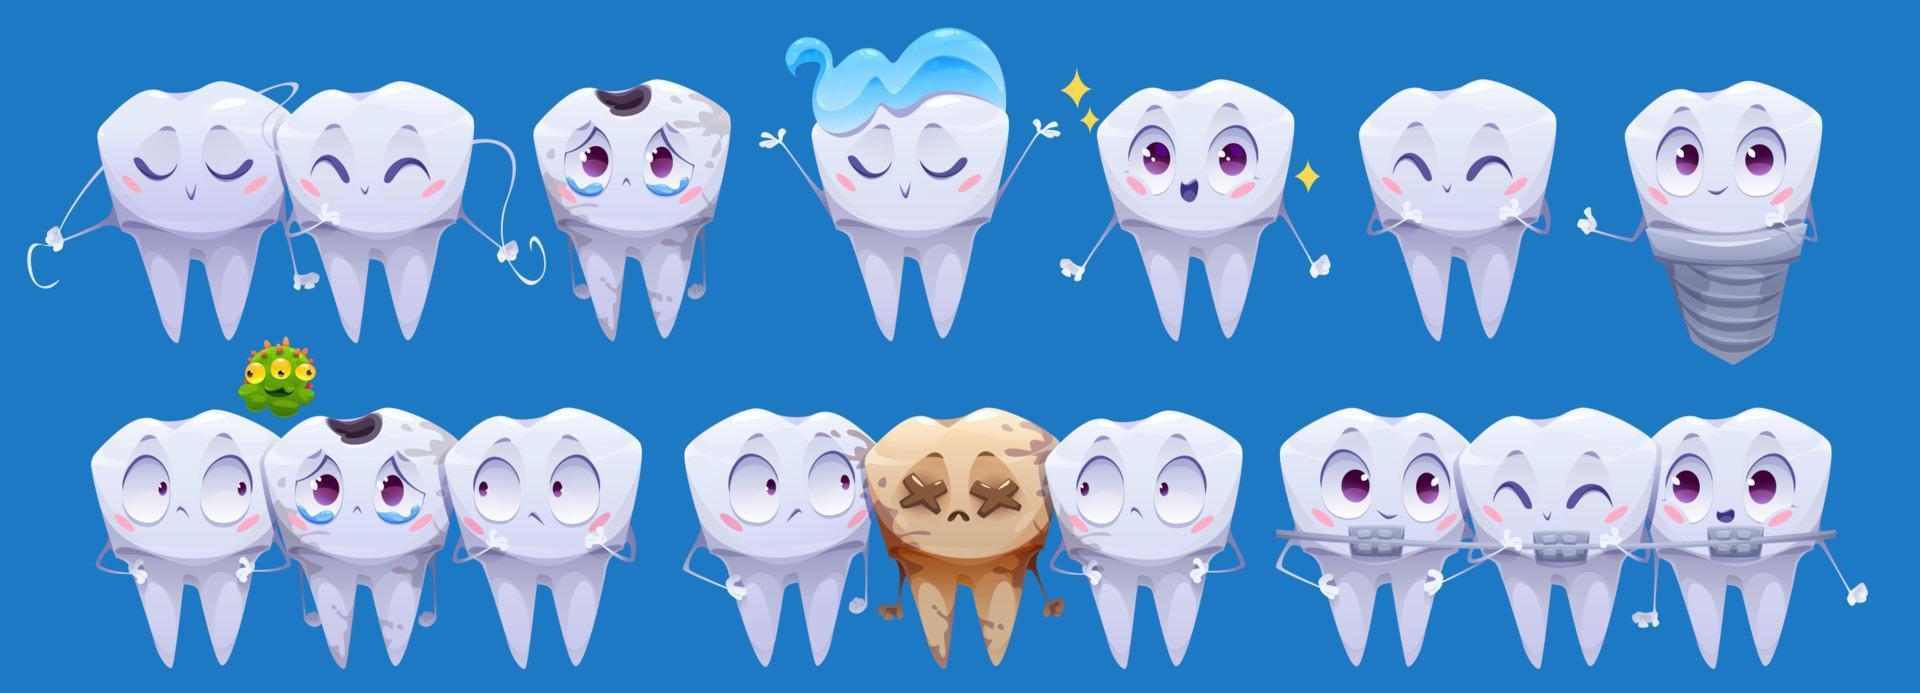 personajes de dibujos animados de dientes, dientes limpios y sucios vector